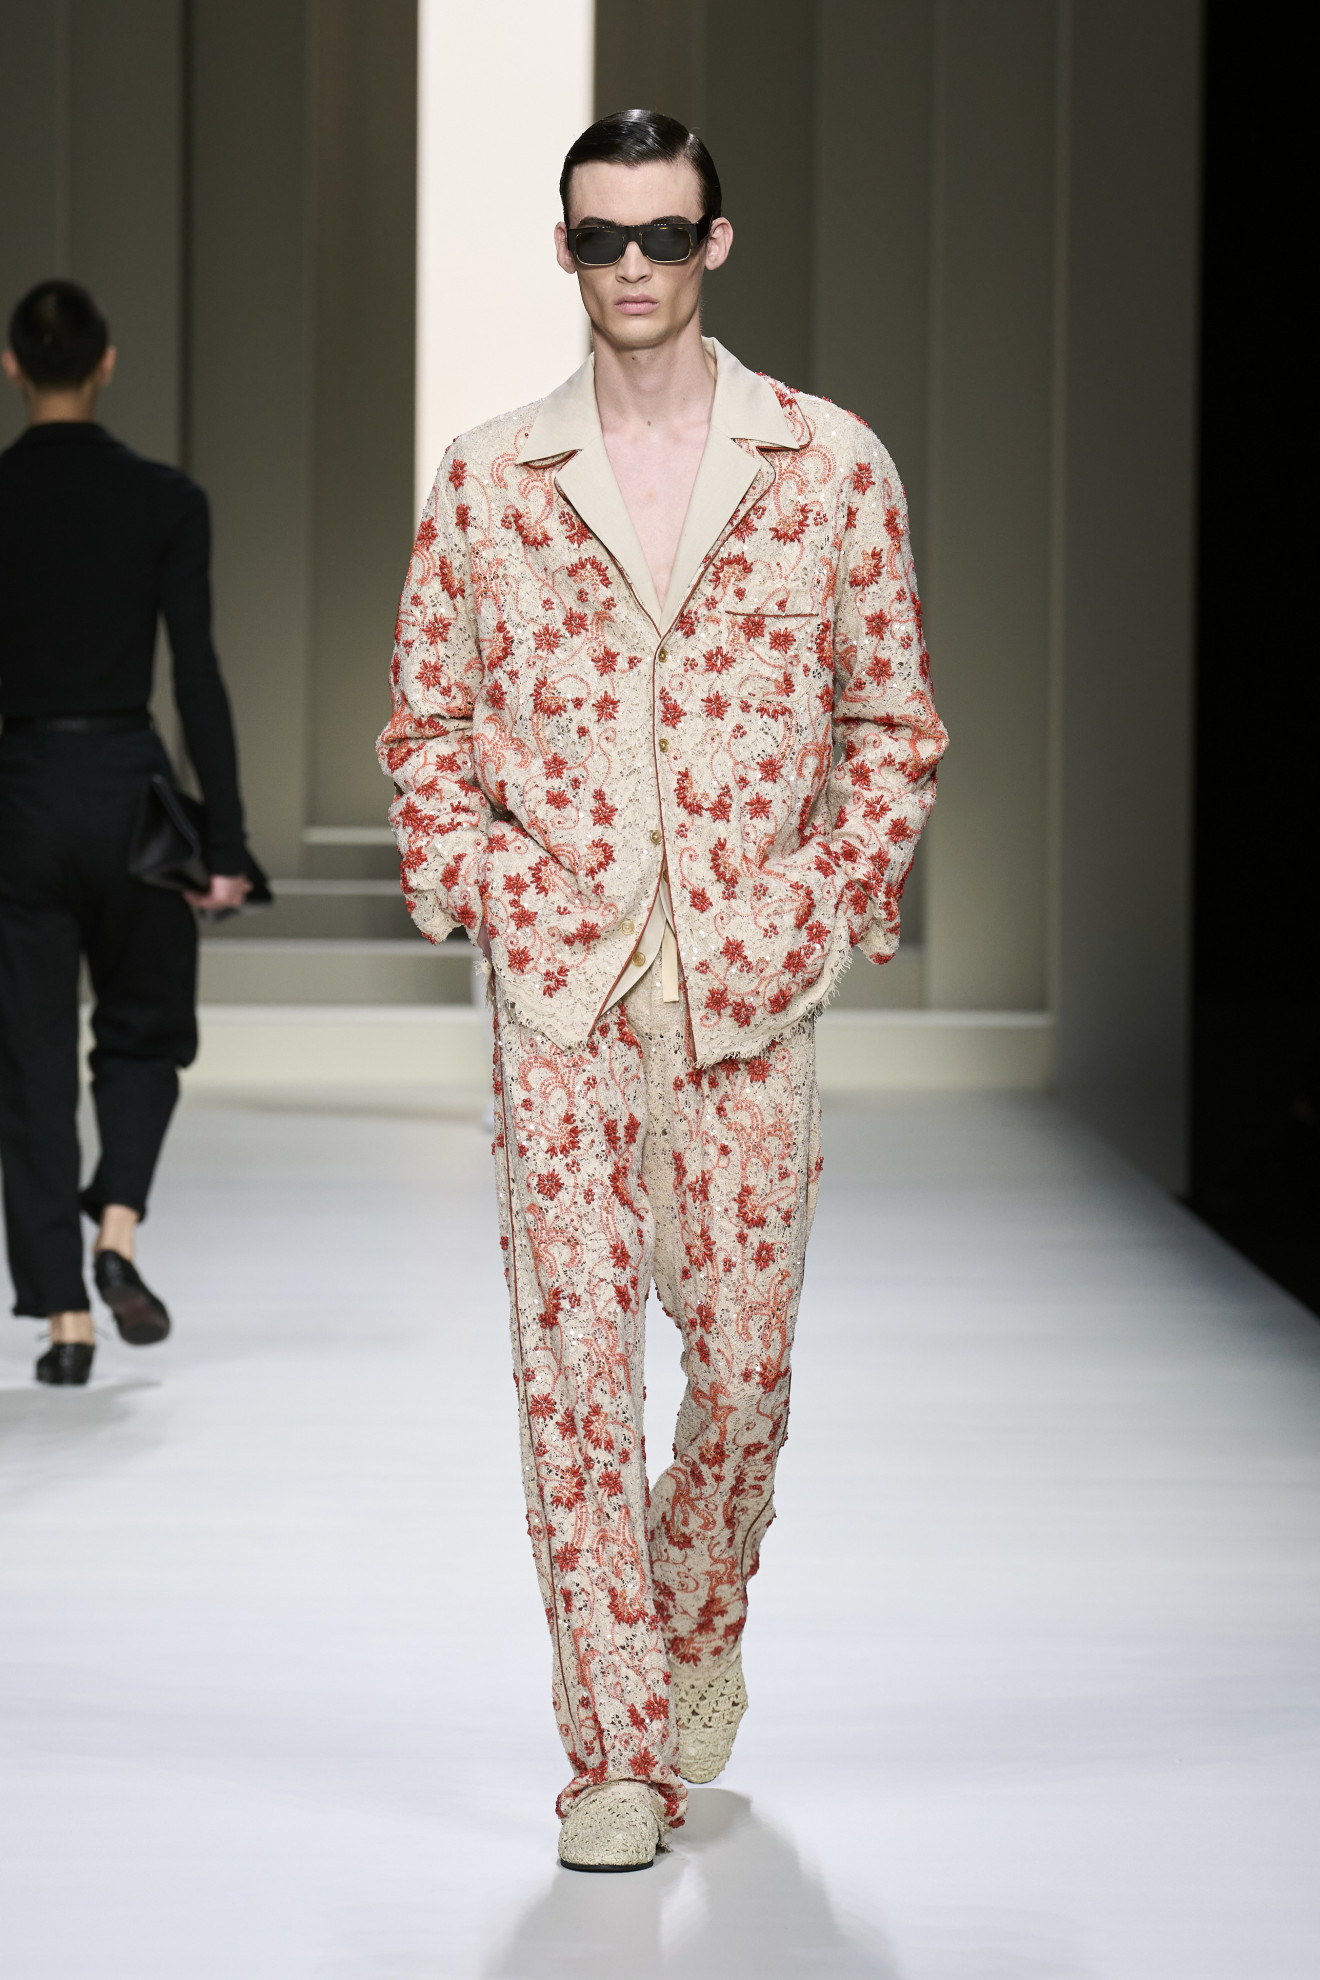 Денди, преппи и дуализм: в Милане стартовала Неделя мужской моды